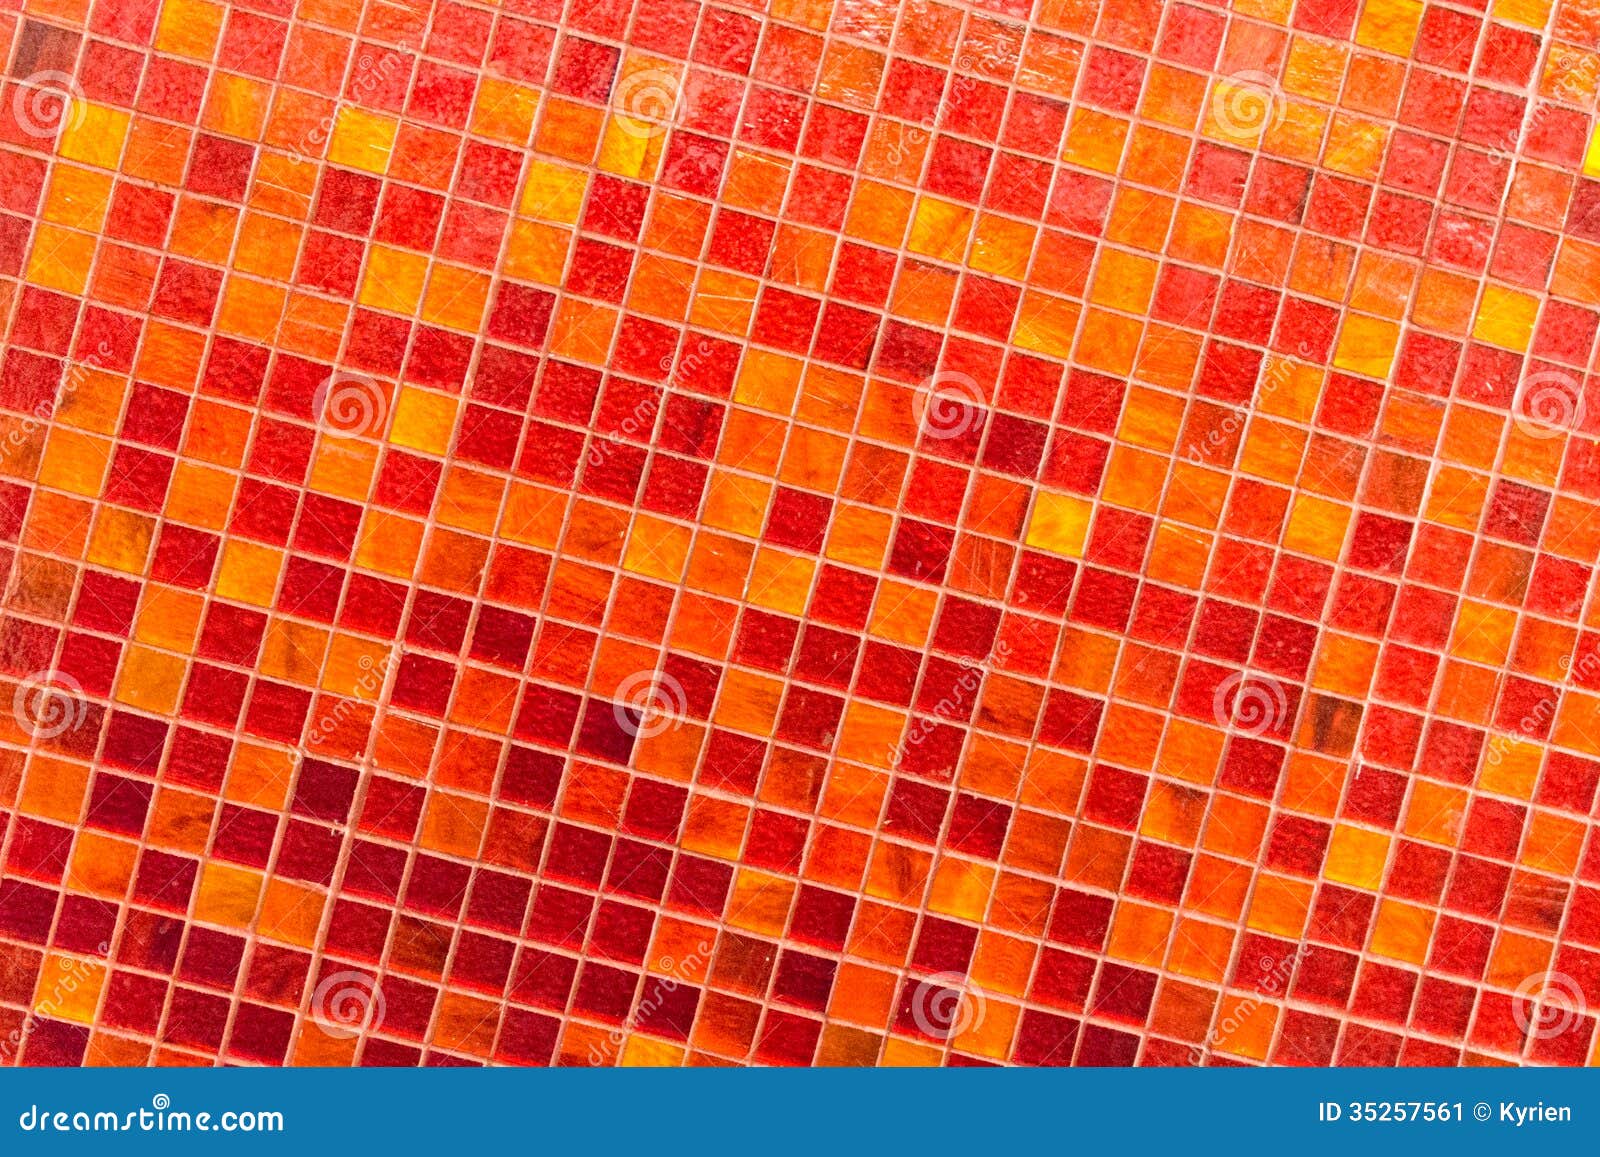 Orange Tile Mosaic Stock Image Image 35257561